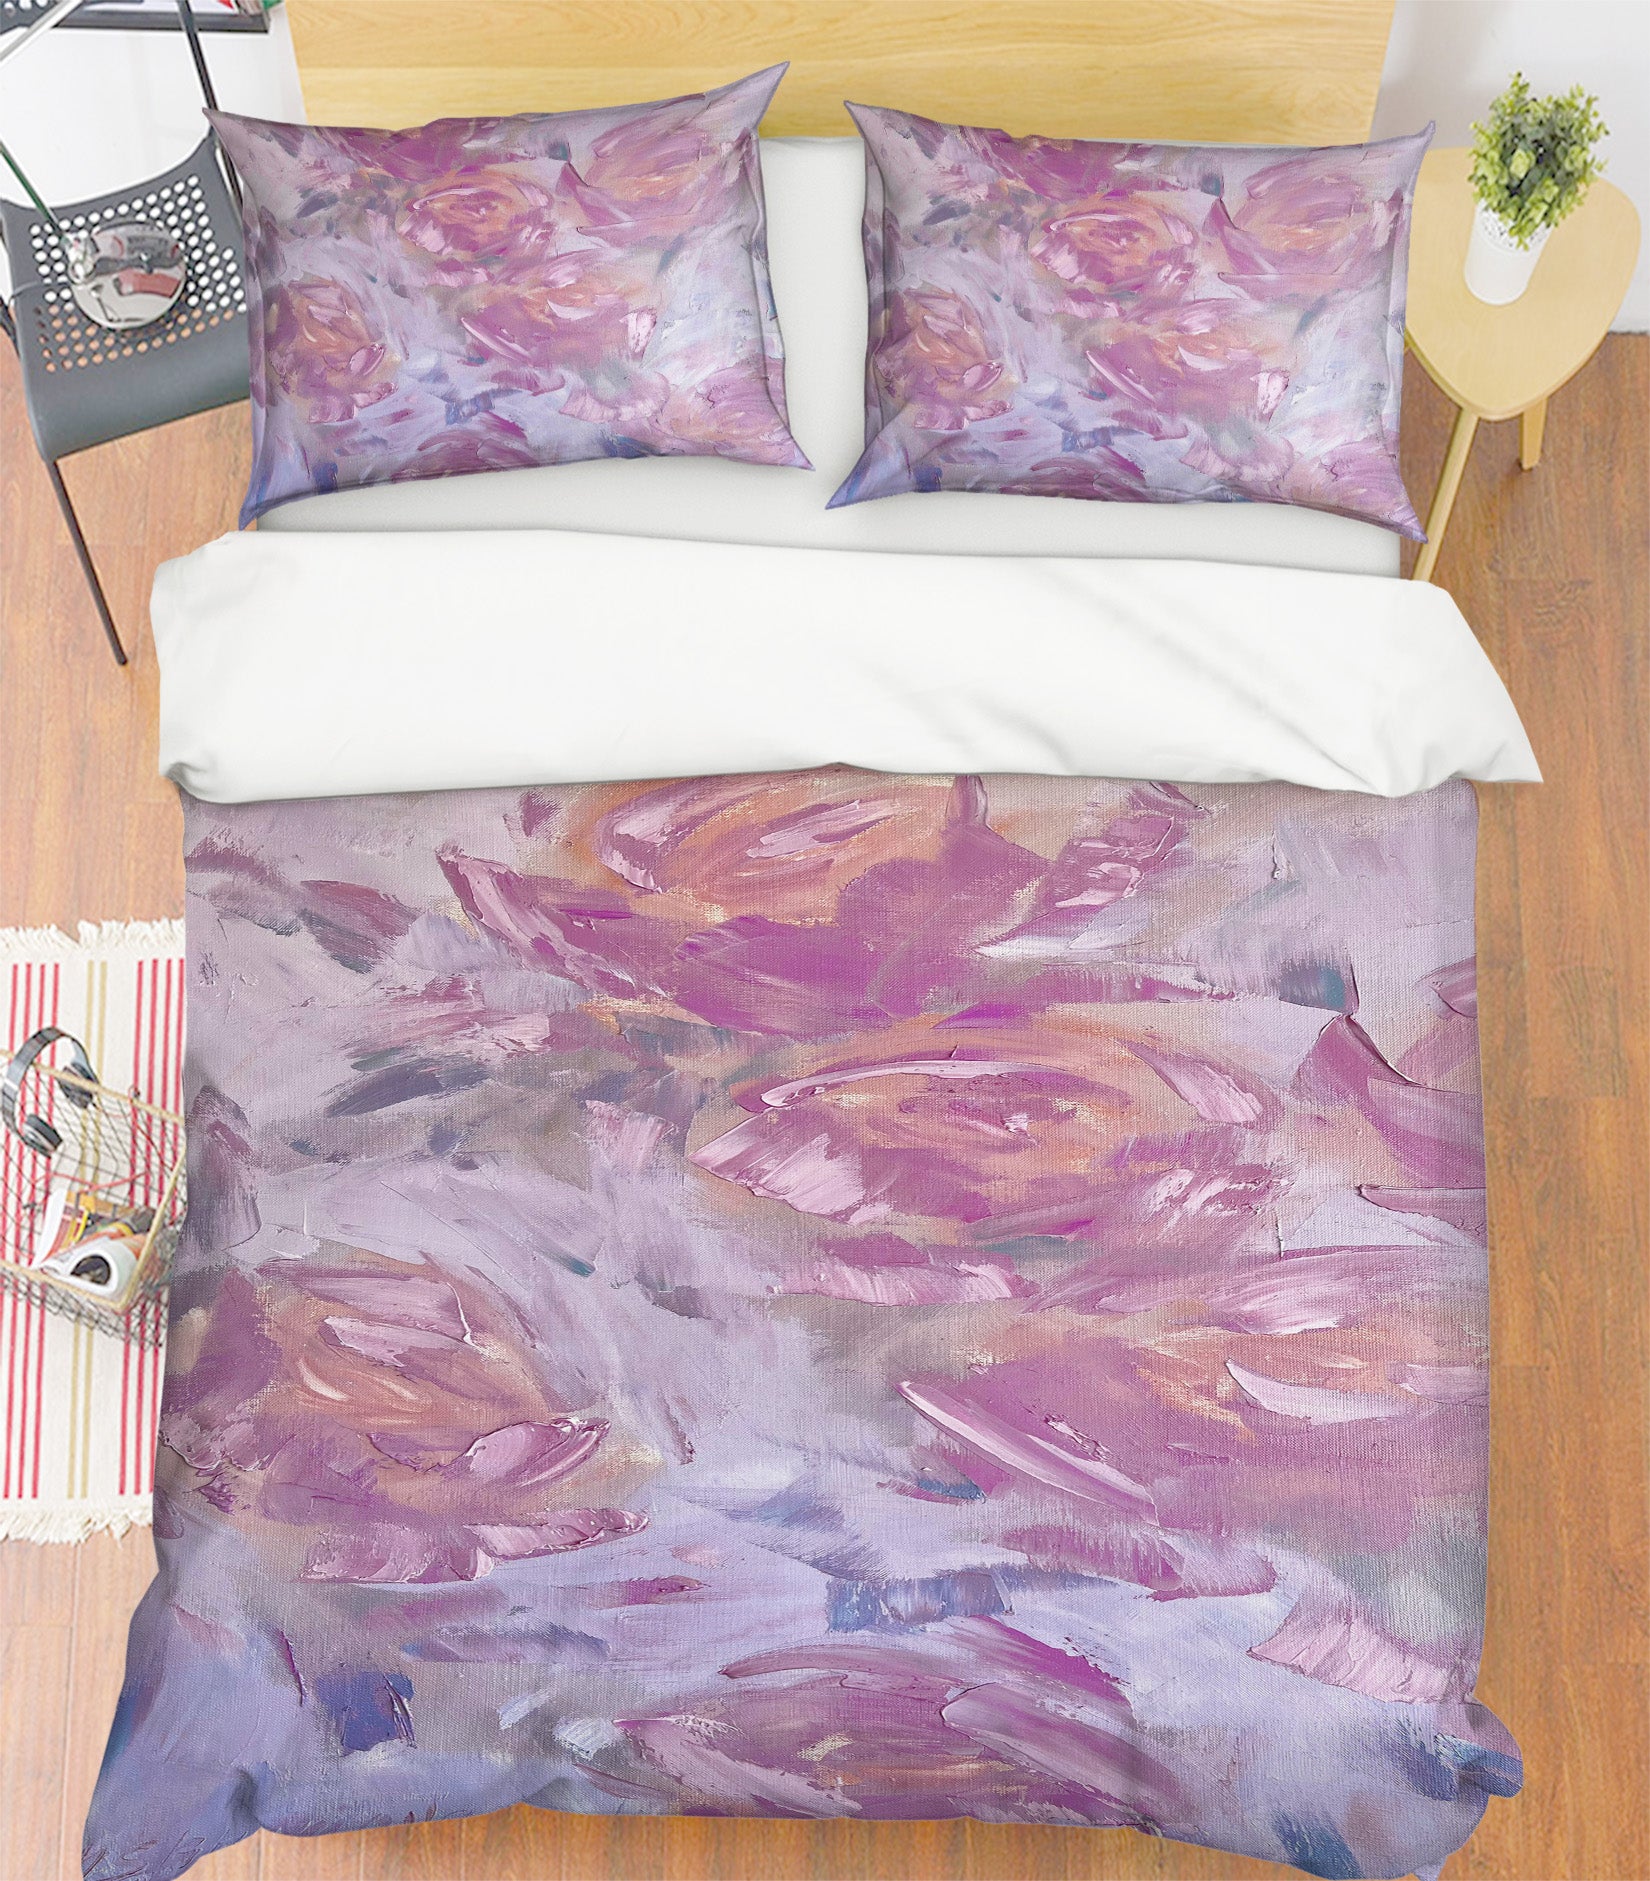 3D Nice Purple 3808 Skromova Marina Bedding Bed Pillowcases Quilt Cover Duvet Cover